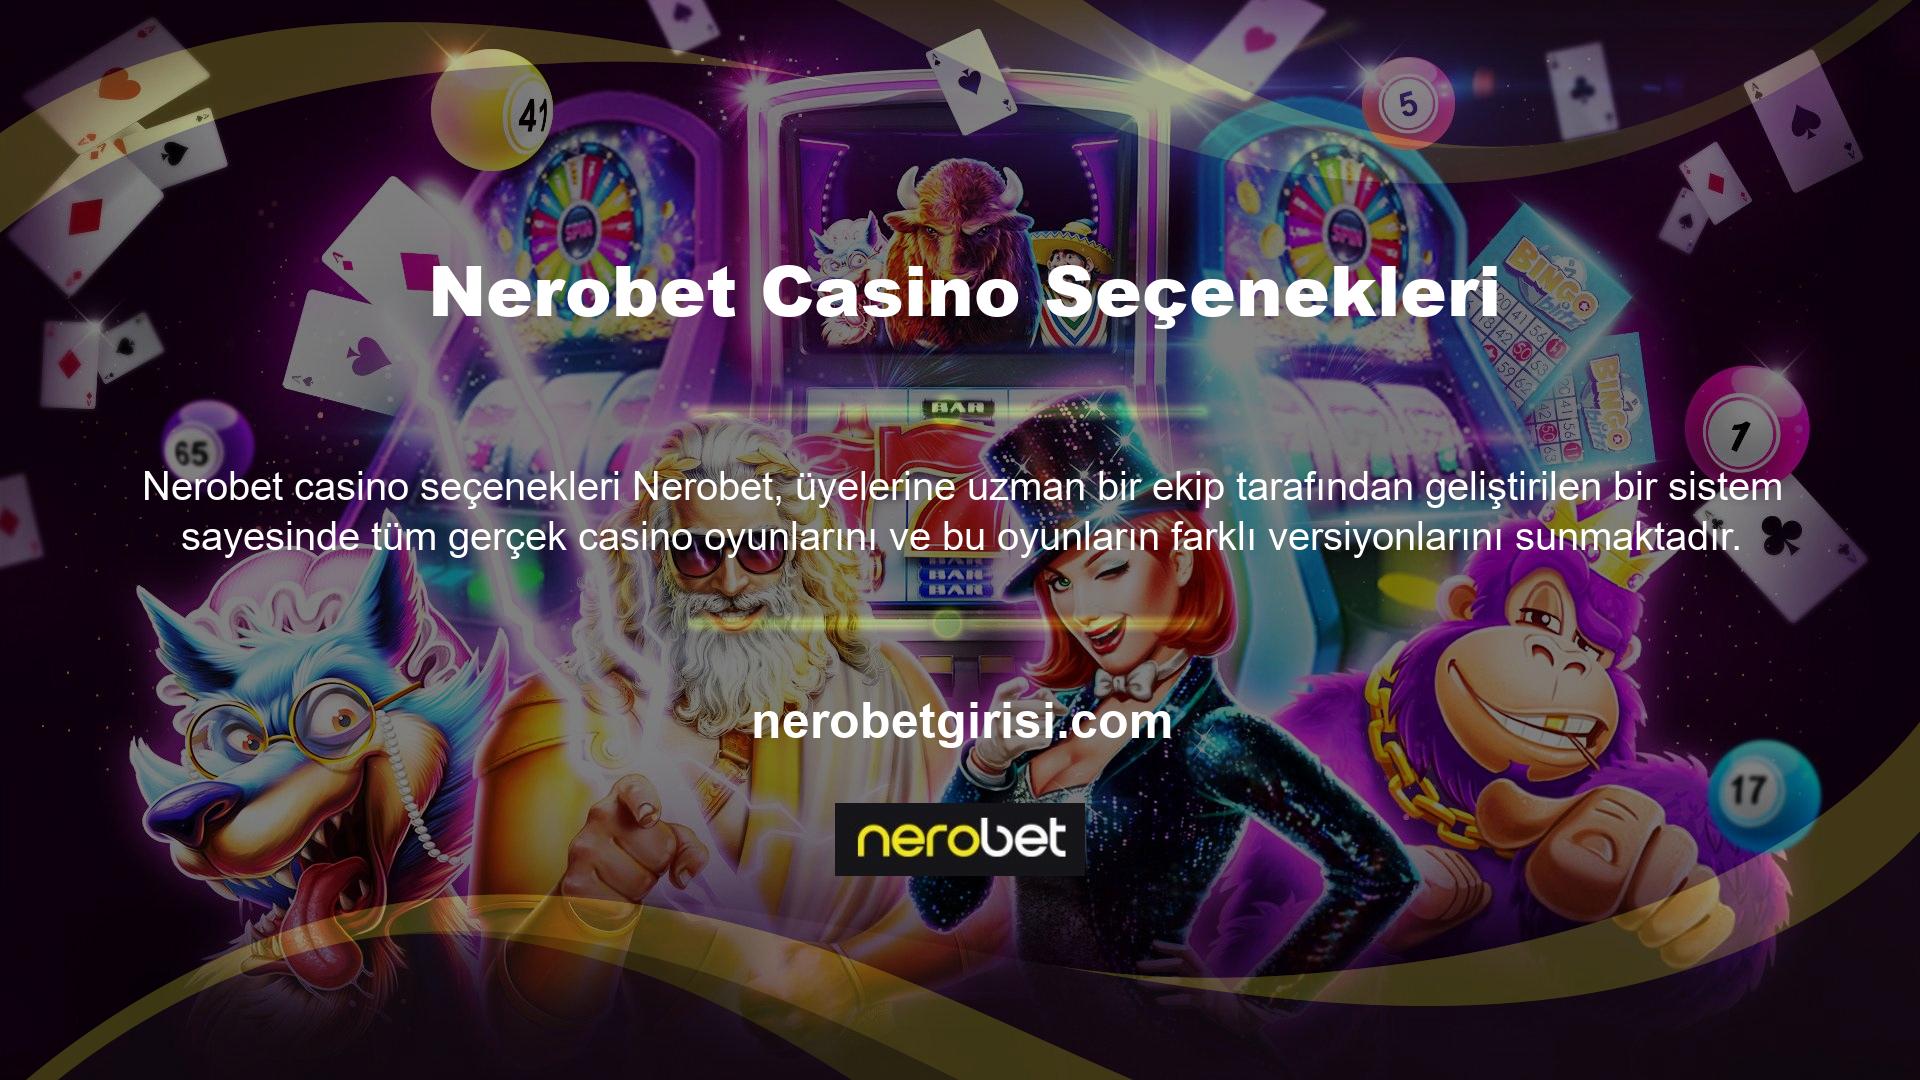 Ayrıca Nerobet kendi geliştirdiği canlı casino sistemi ile kullanıcılara gerçek bir casino deneyimi sunarak mükemmel bir deneyim sunmaktadır